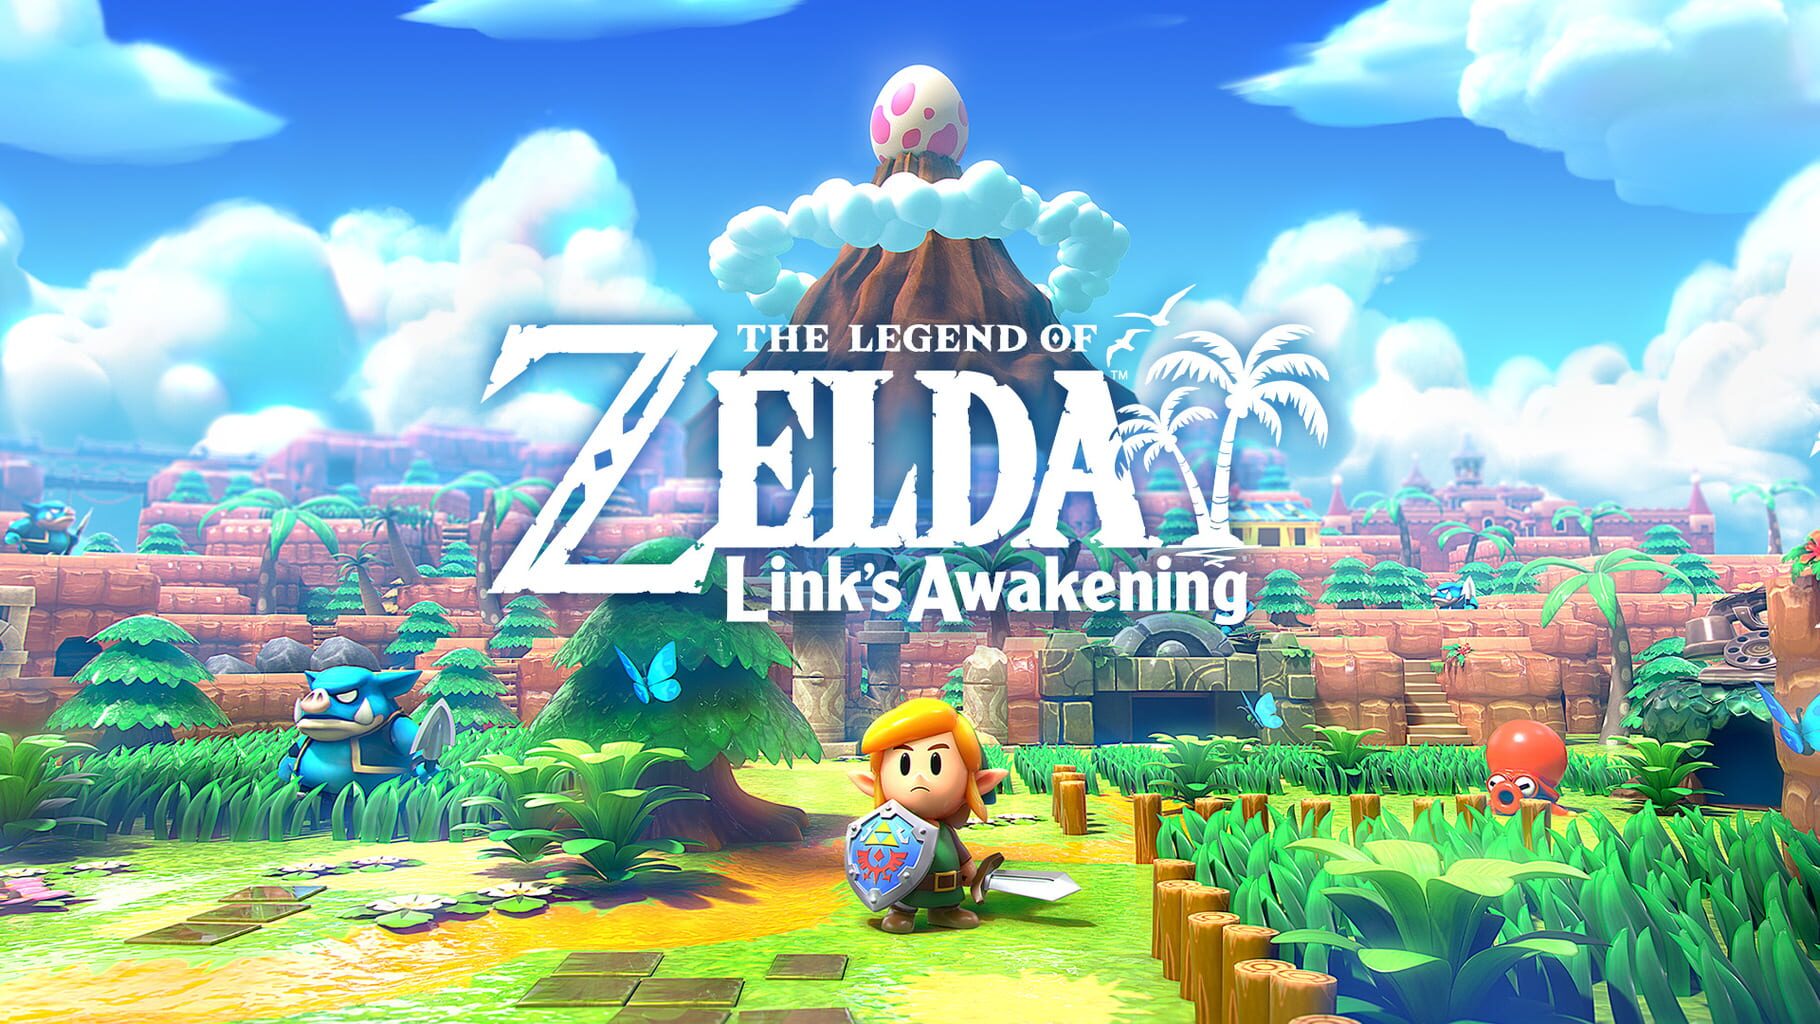 Arte - The Legend of Zelda: Link's Awakening